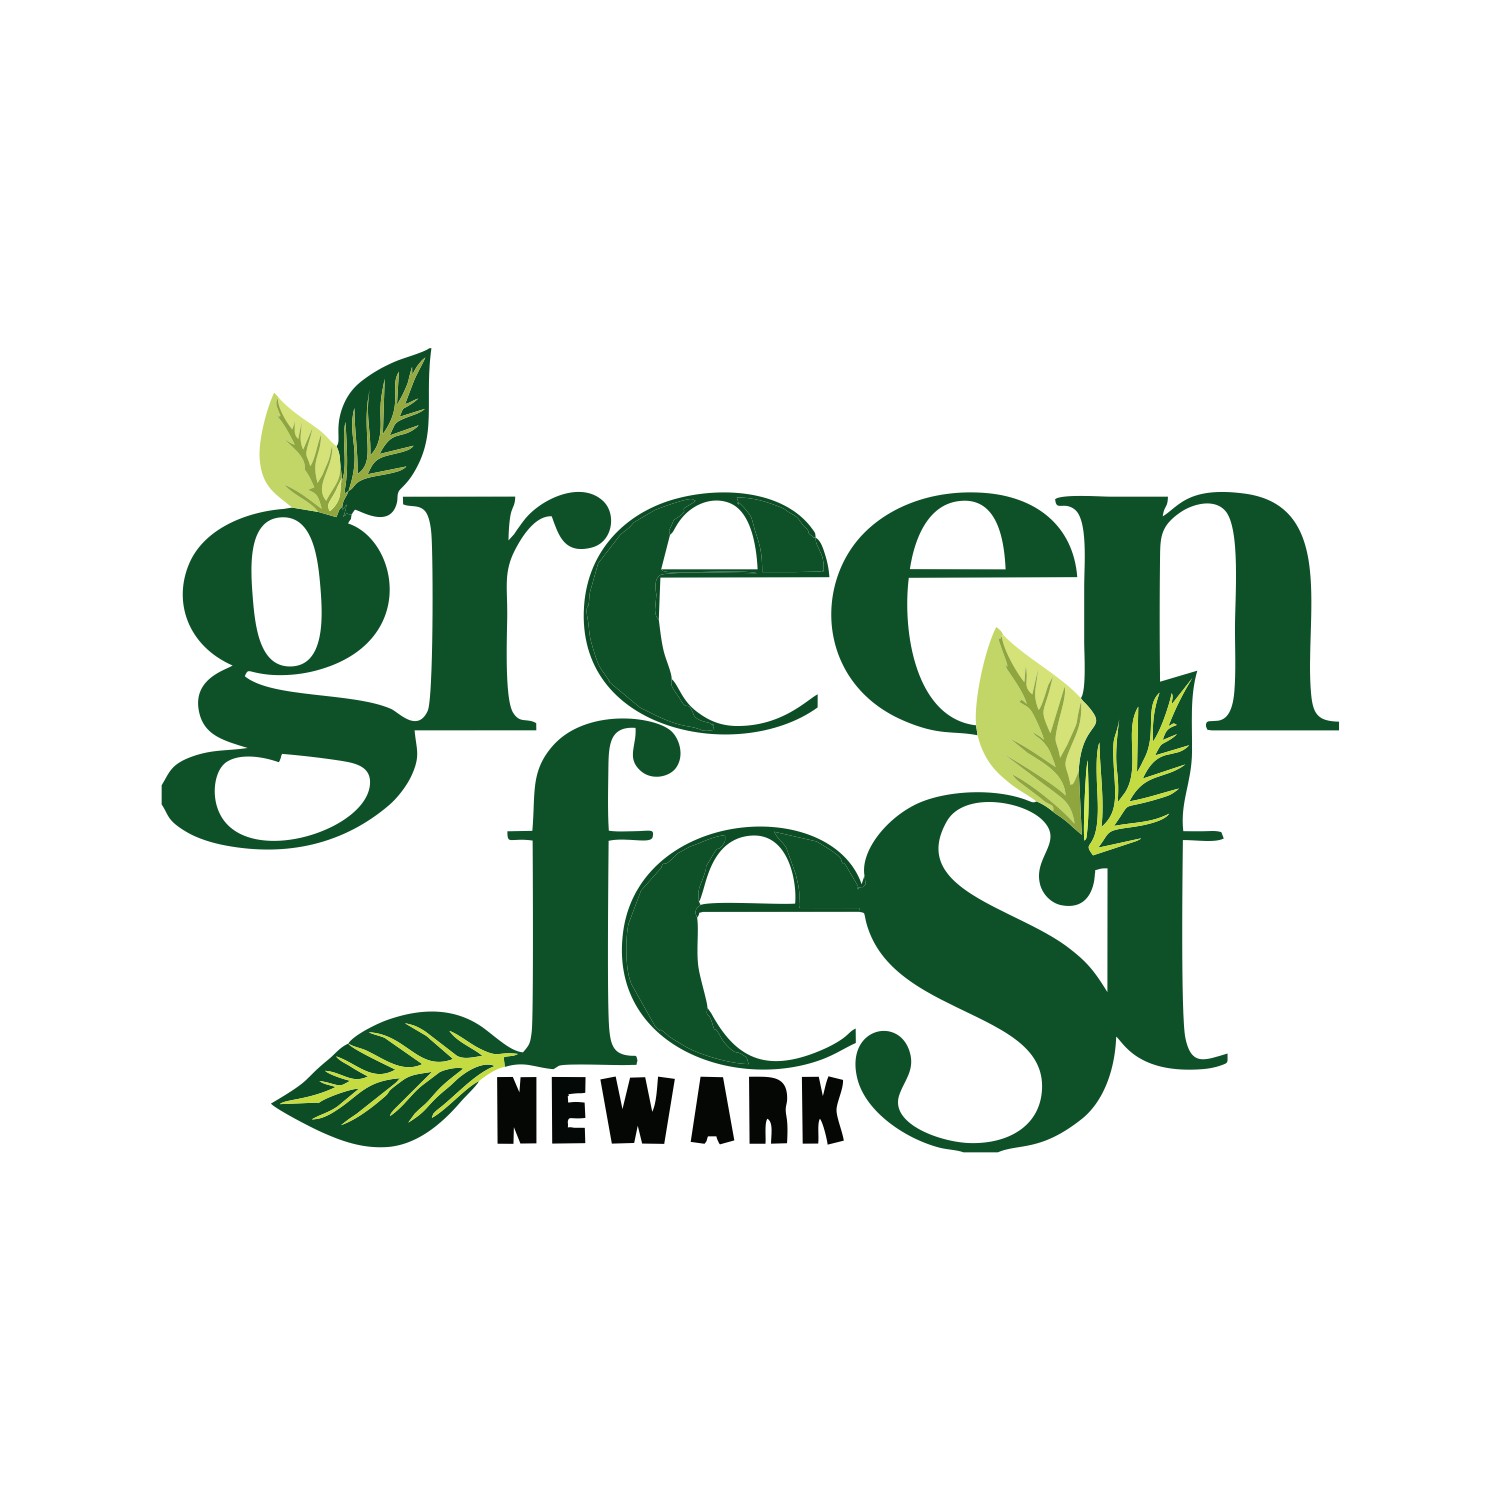 Newark City's 2nd Annual Green Fair - CNR Presentation